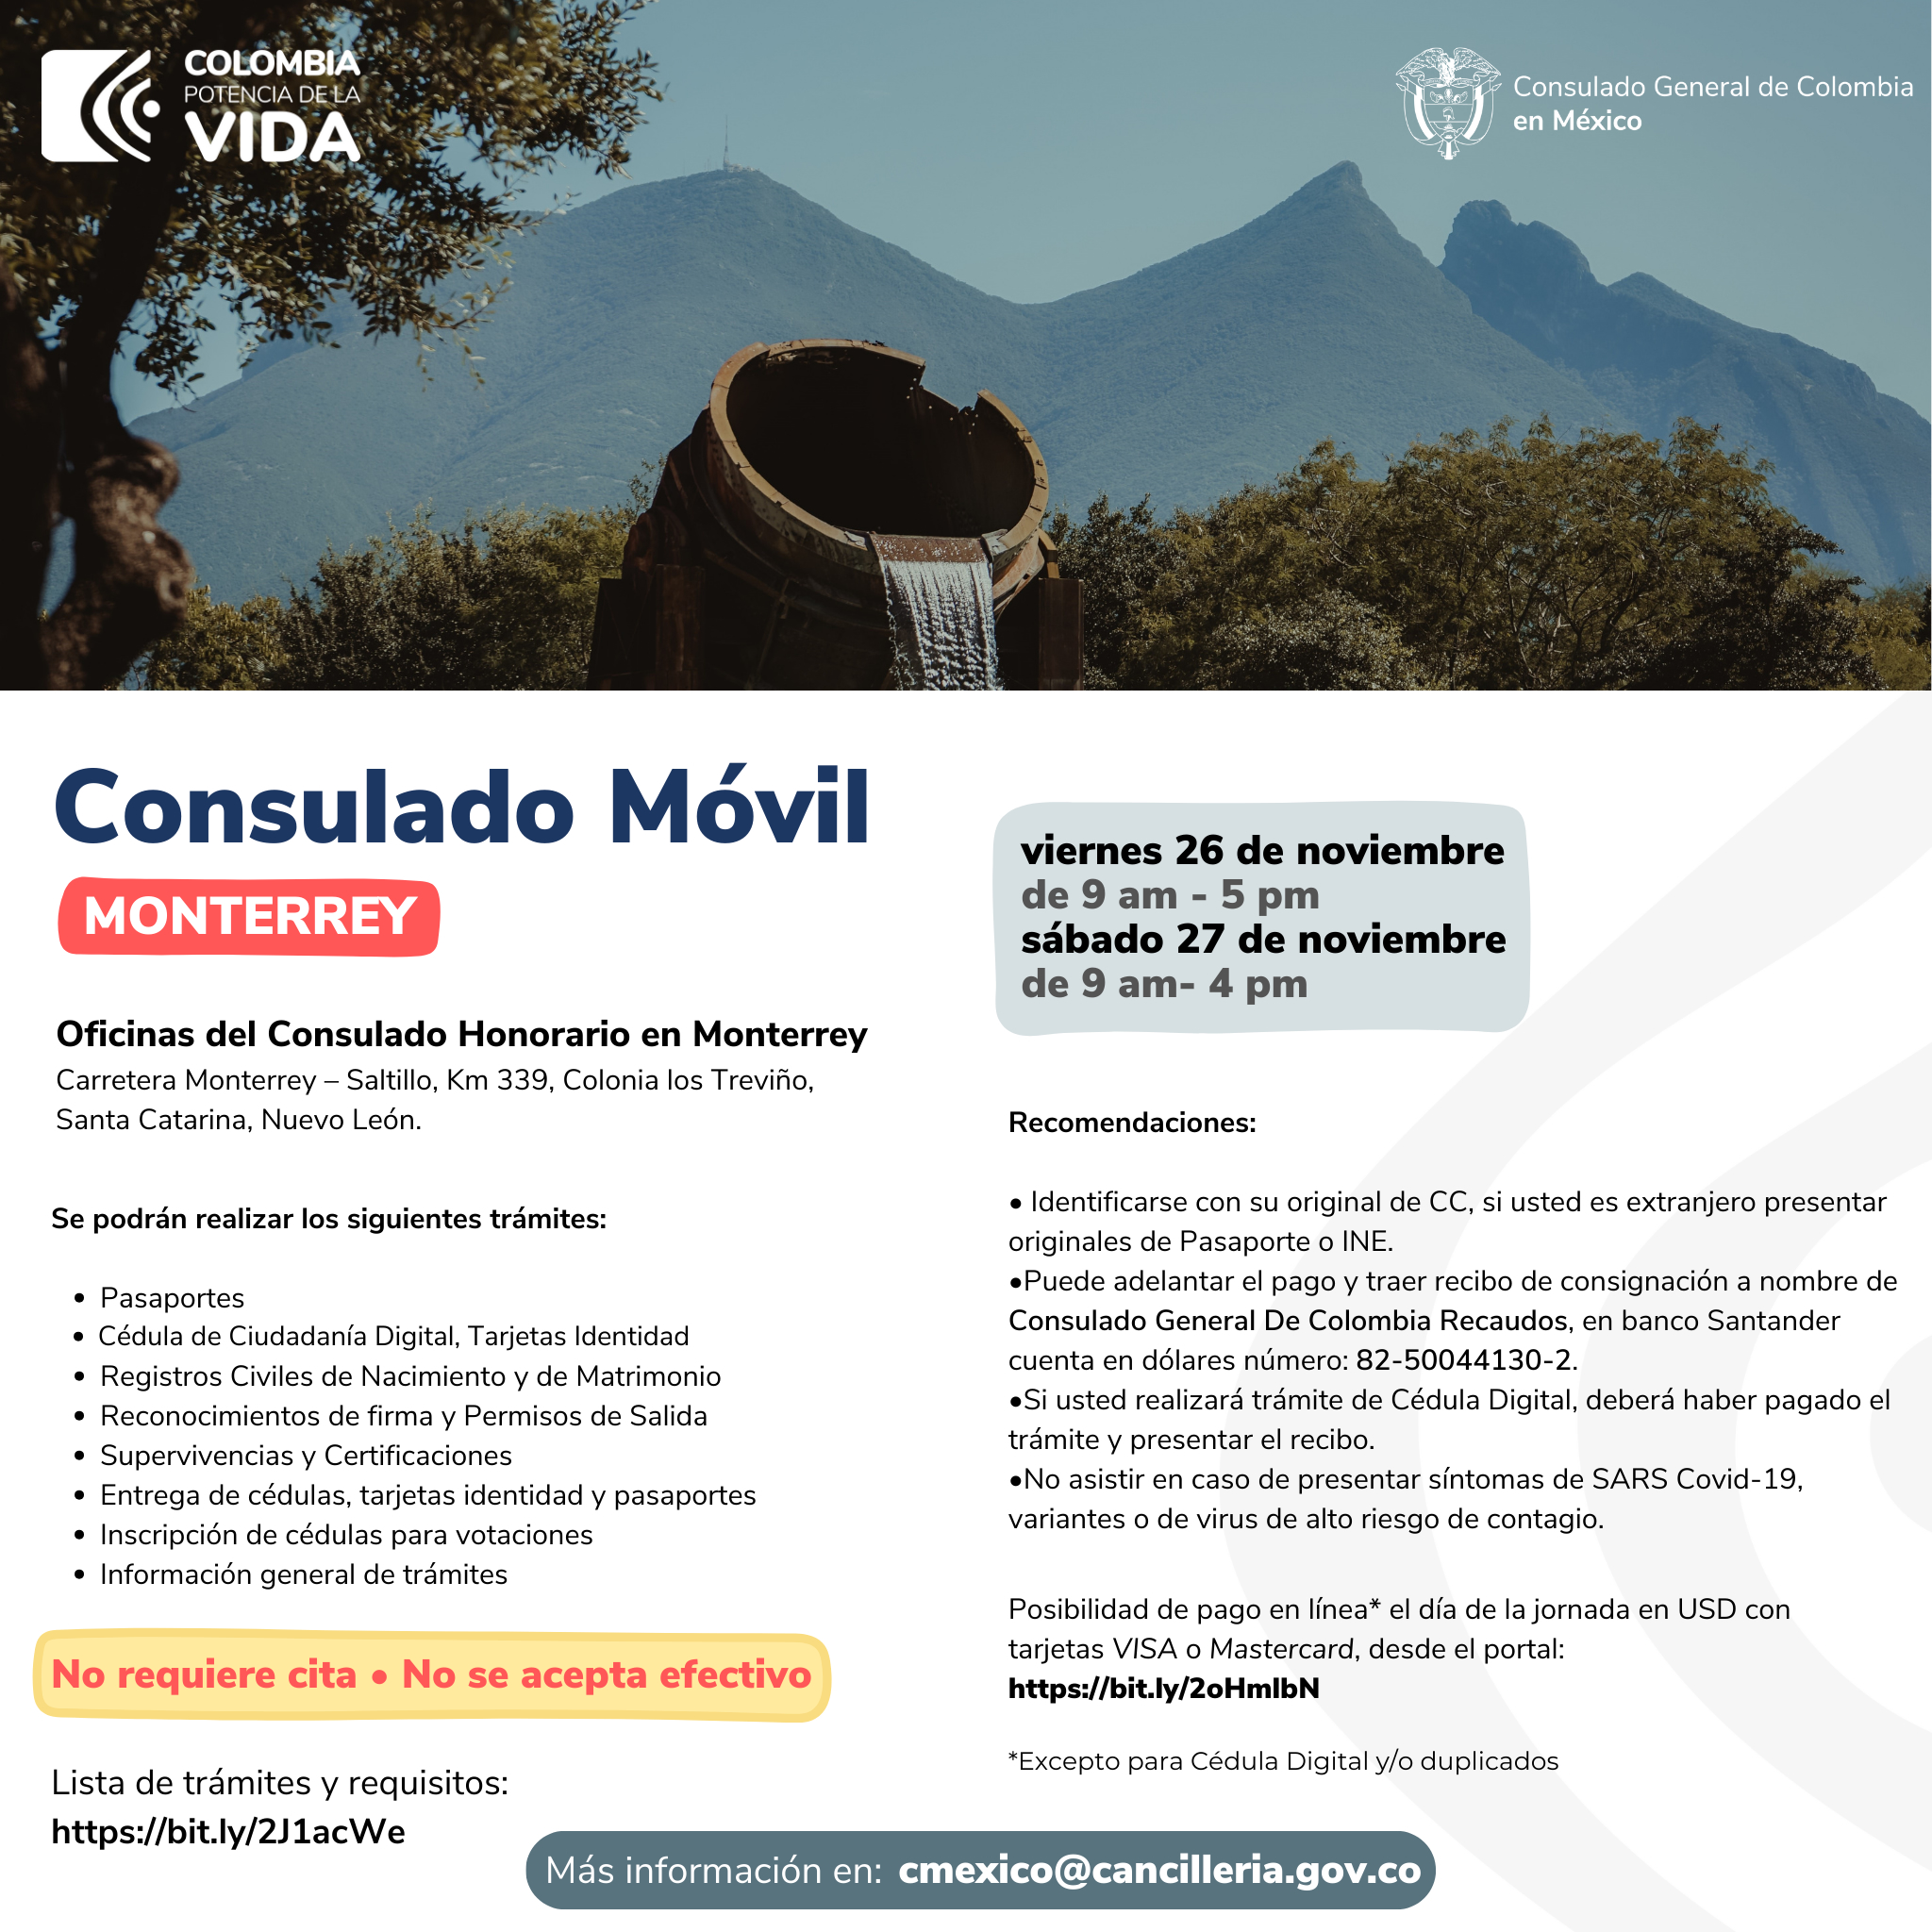 Este 26 y 27 de enero en Monterrey habrá Consulado Móvil